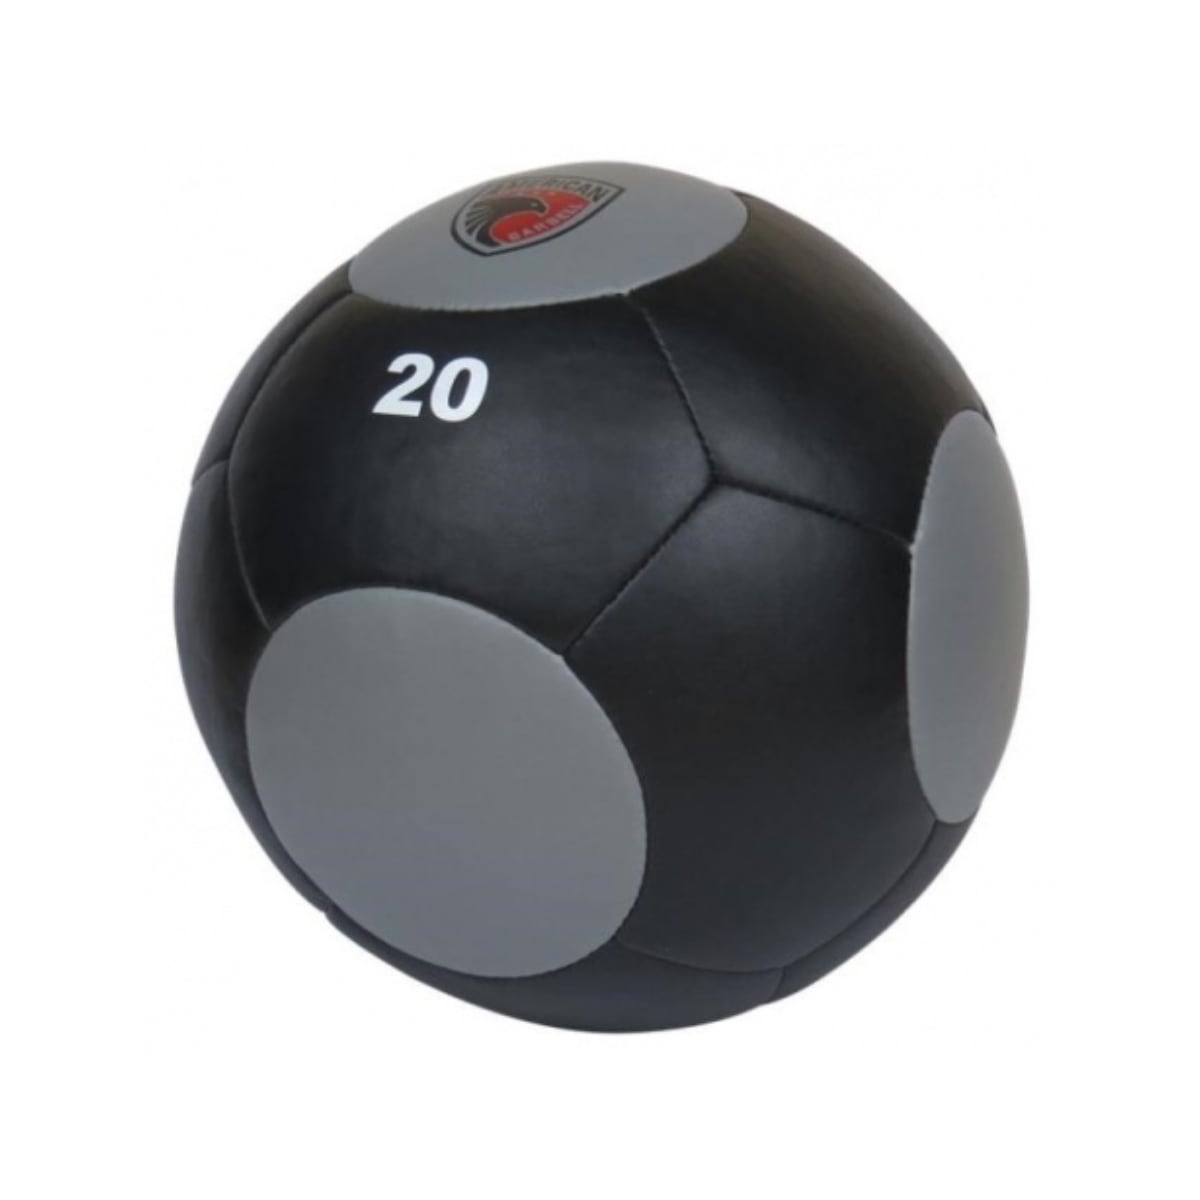 Brug American Barbell 5 kg Wall Ball til en forbedret oplevelse